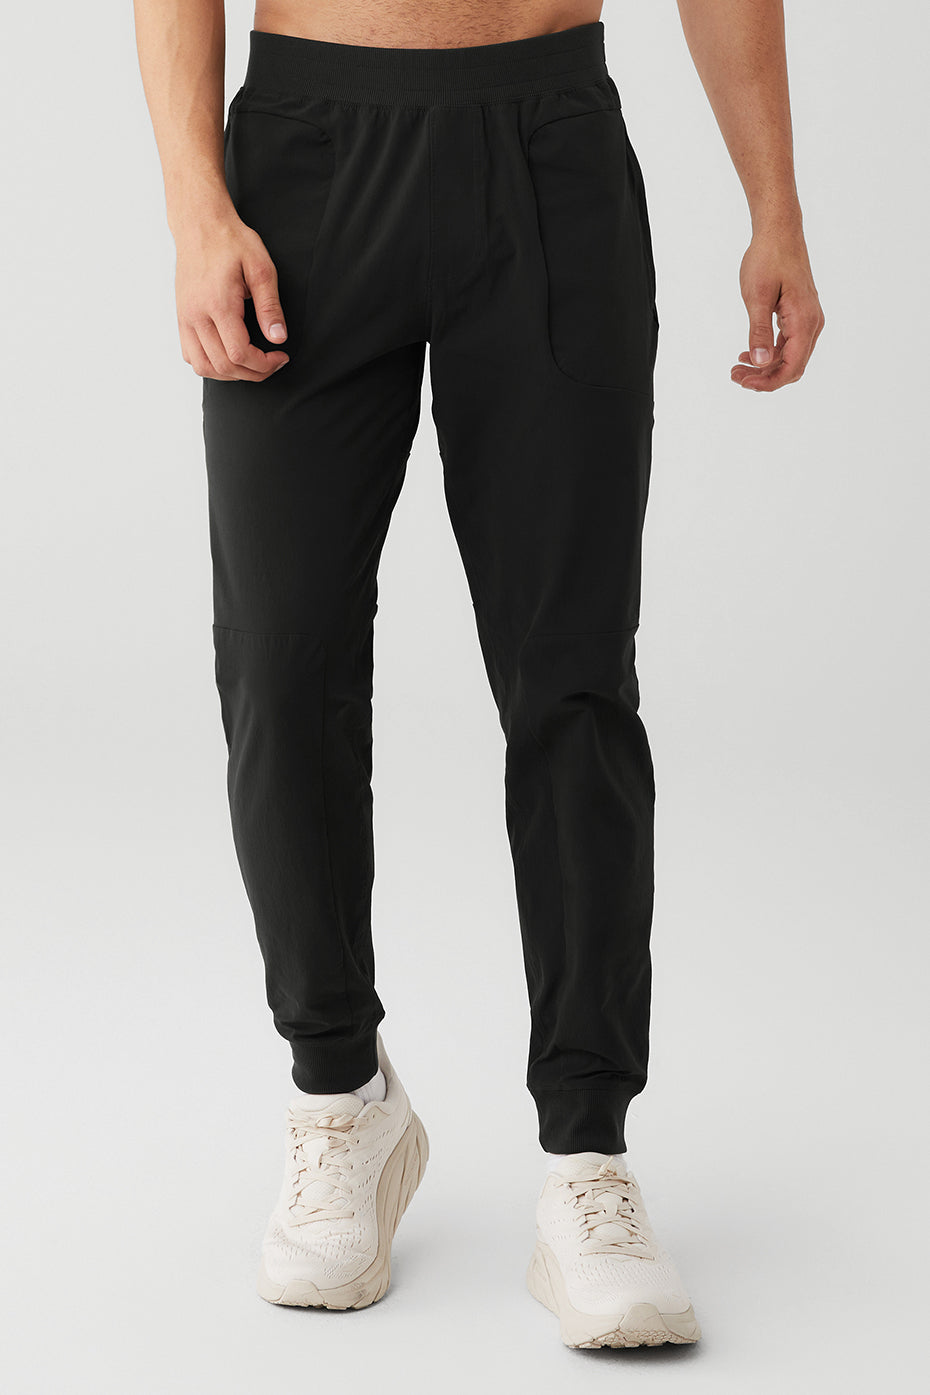 Co-Op Cropped Tech Trouser - Black